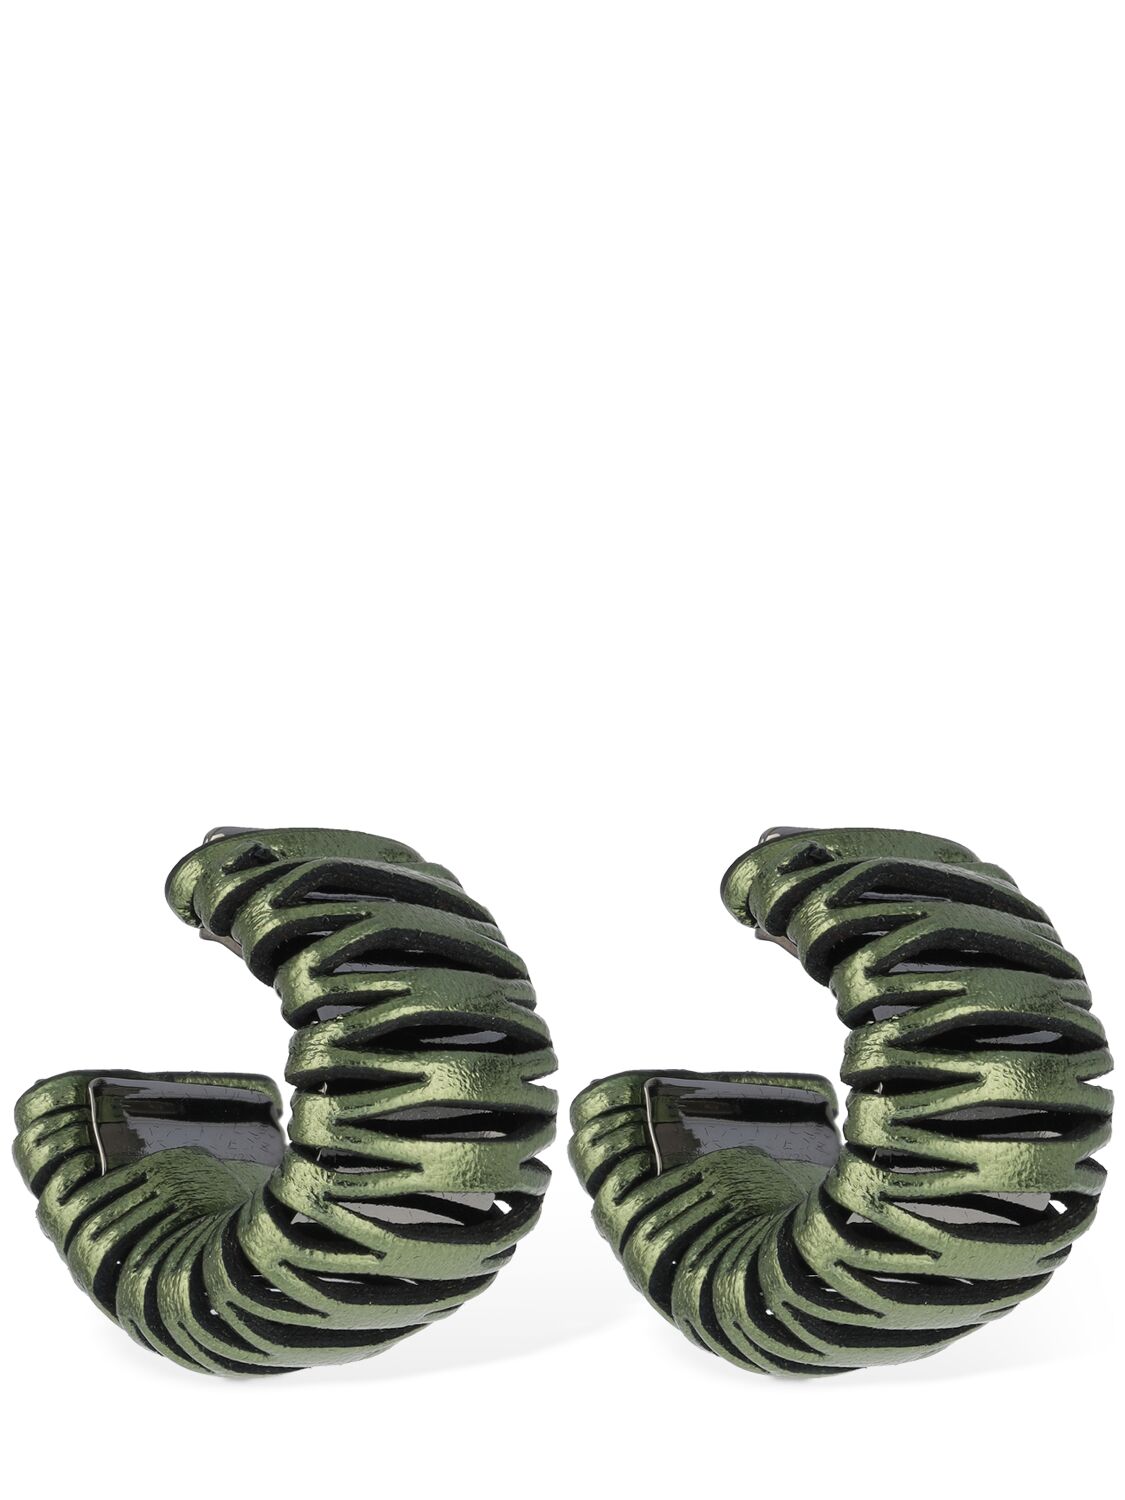 So-le Studio Caterpillar Leather Hoop Earrings In Sage